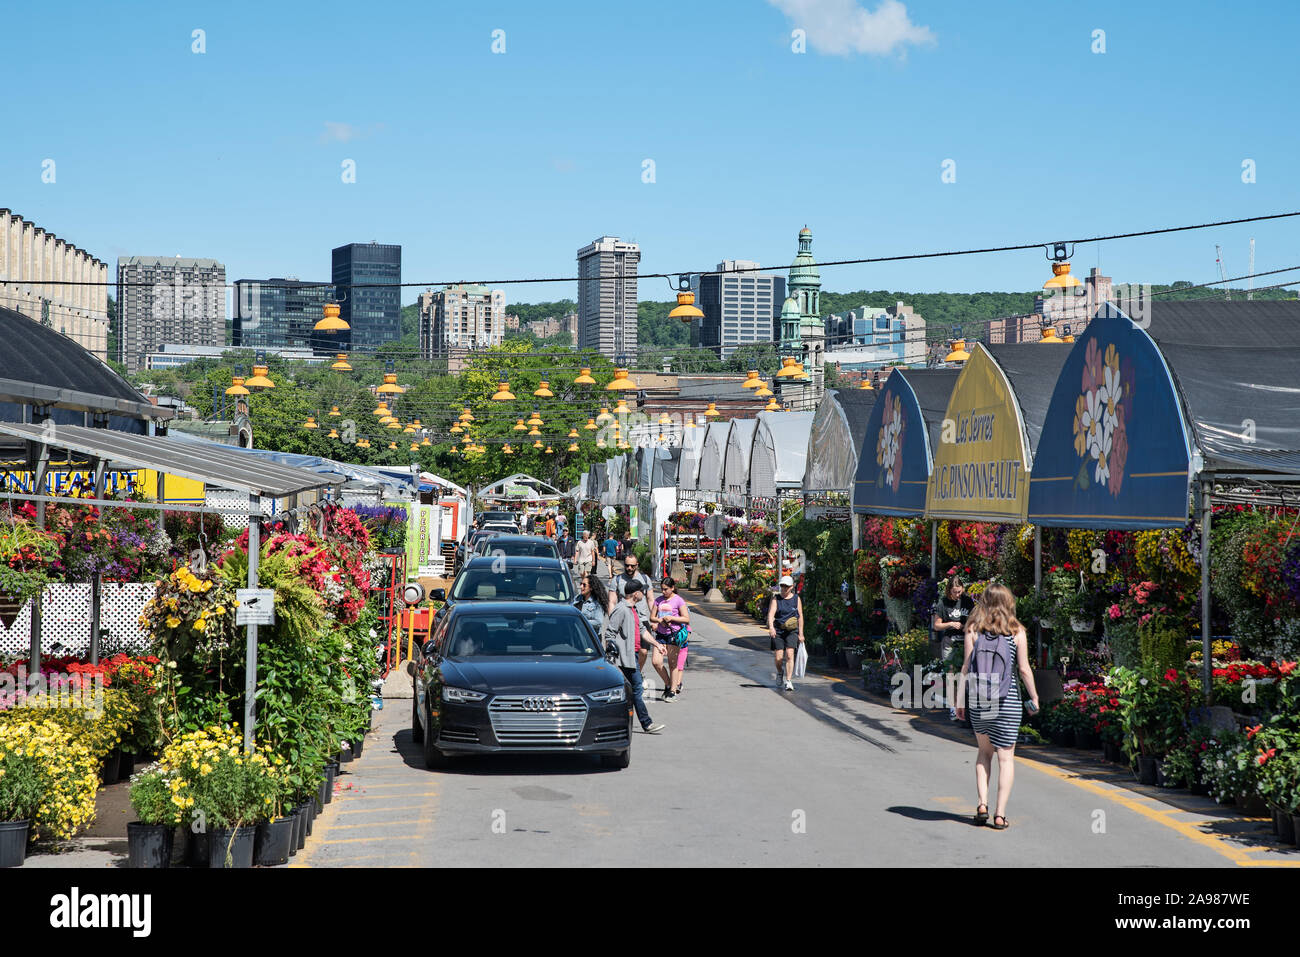 Atwater Market in der Nähe von Lachine Canal, Montreal, Quebec, Kanada Stockfoto